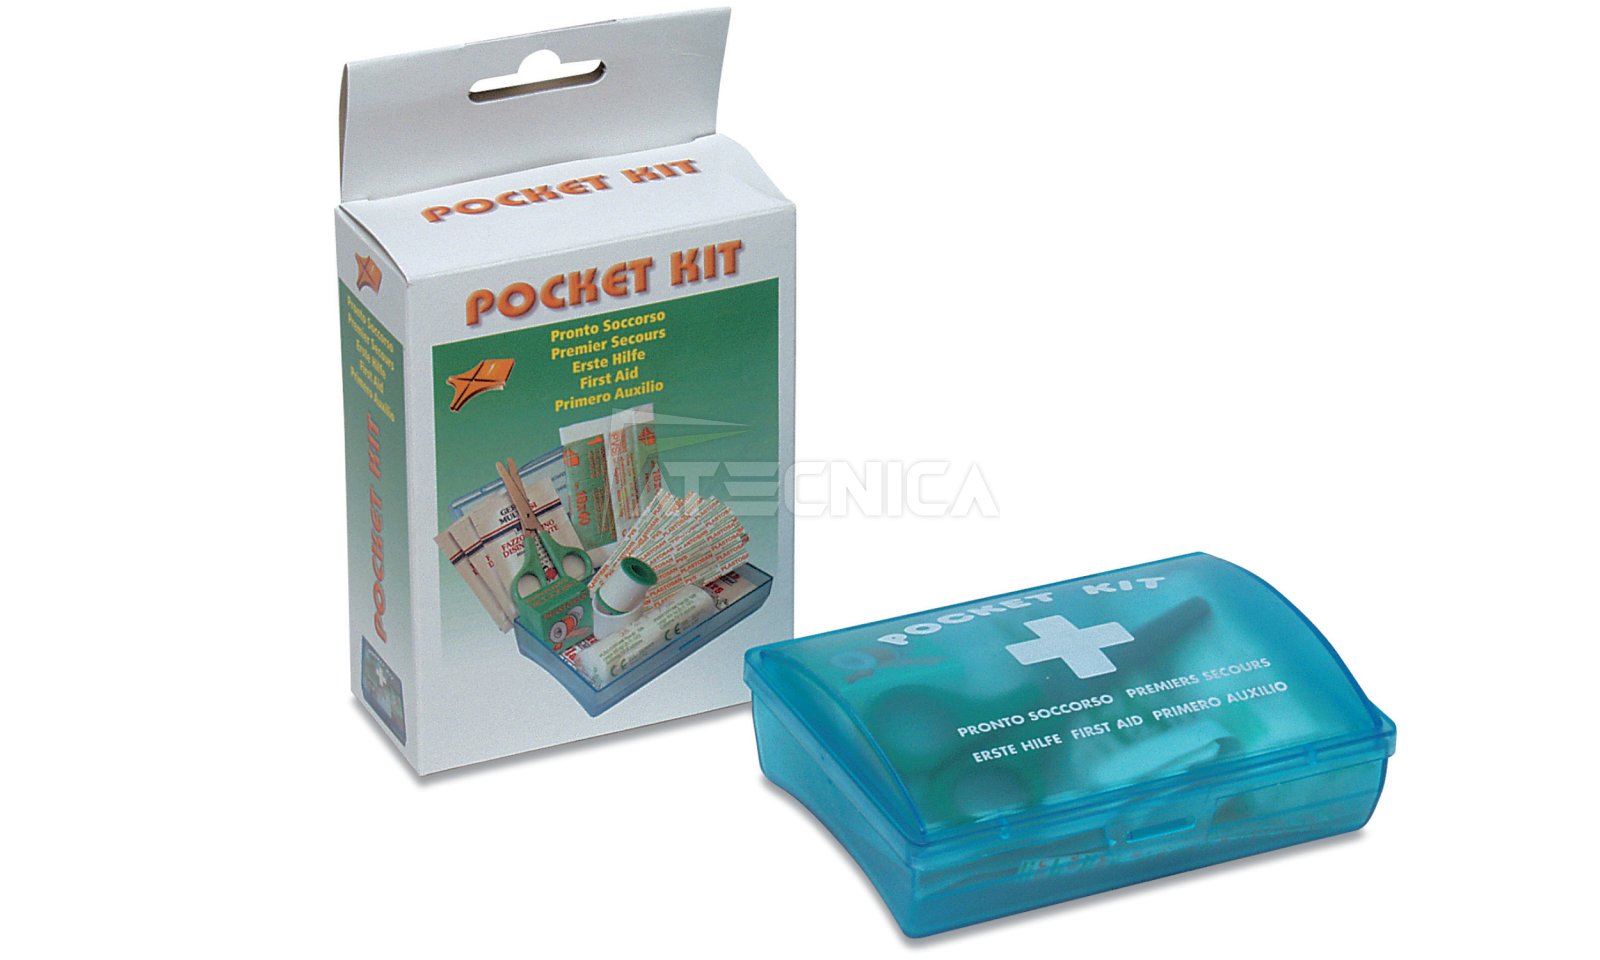 Kit portatile tascabile pronto soccorso POCKET KIT PVS CPS192